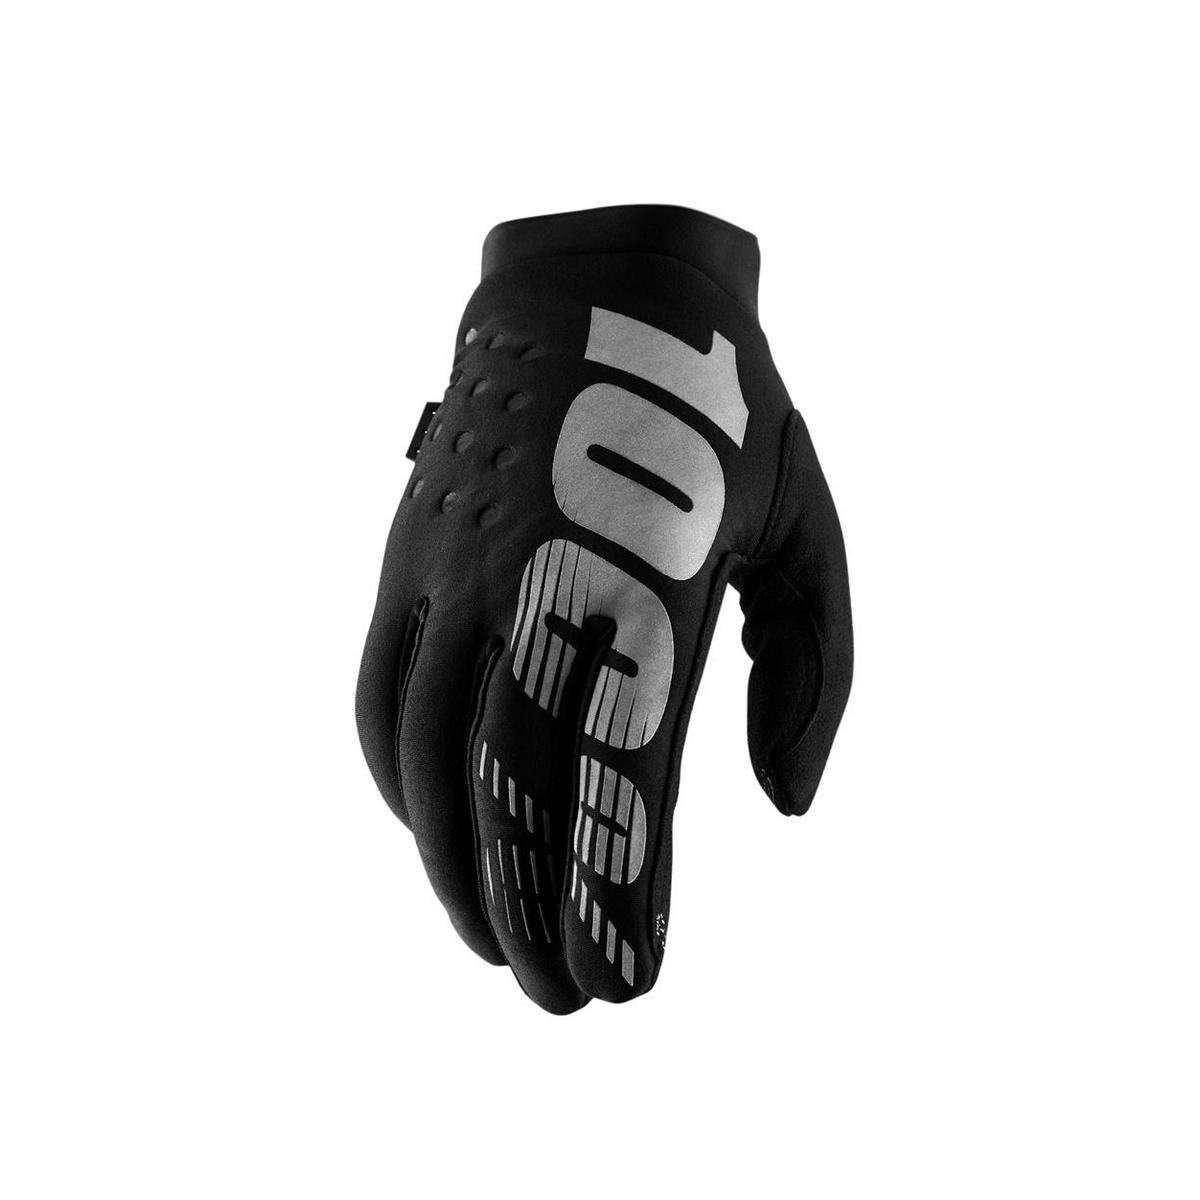 Winter gloves brisker black size M